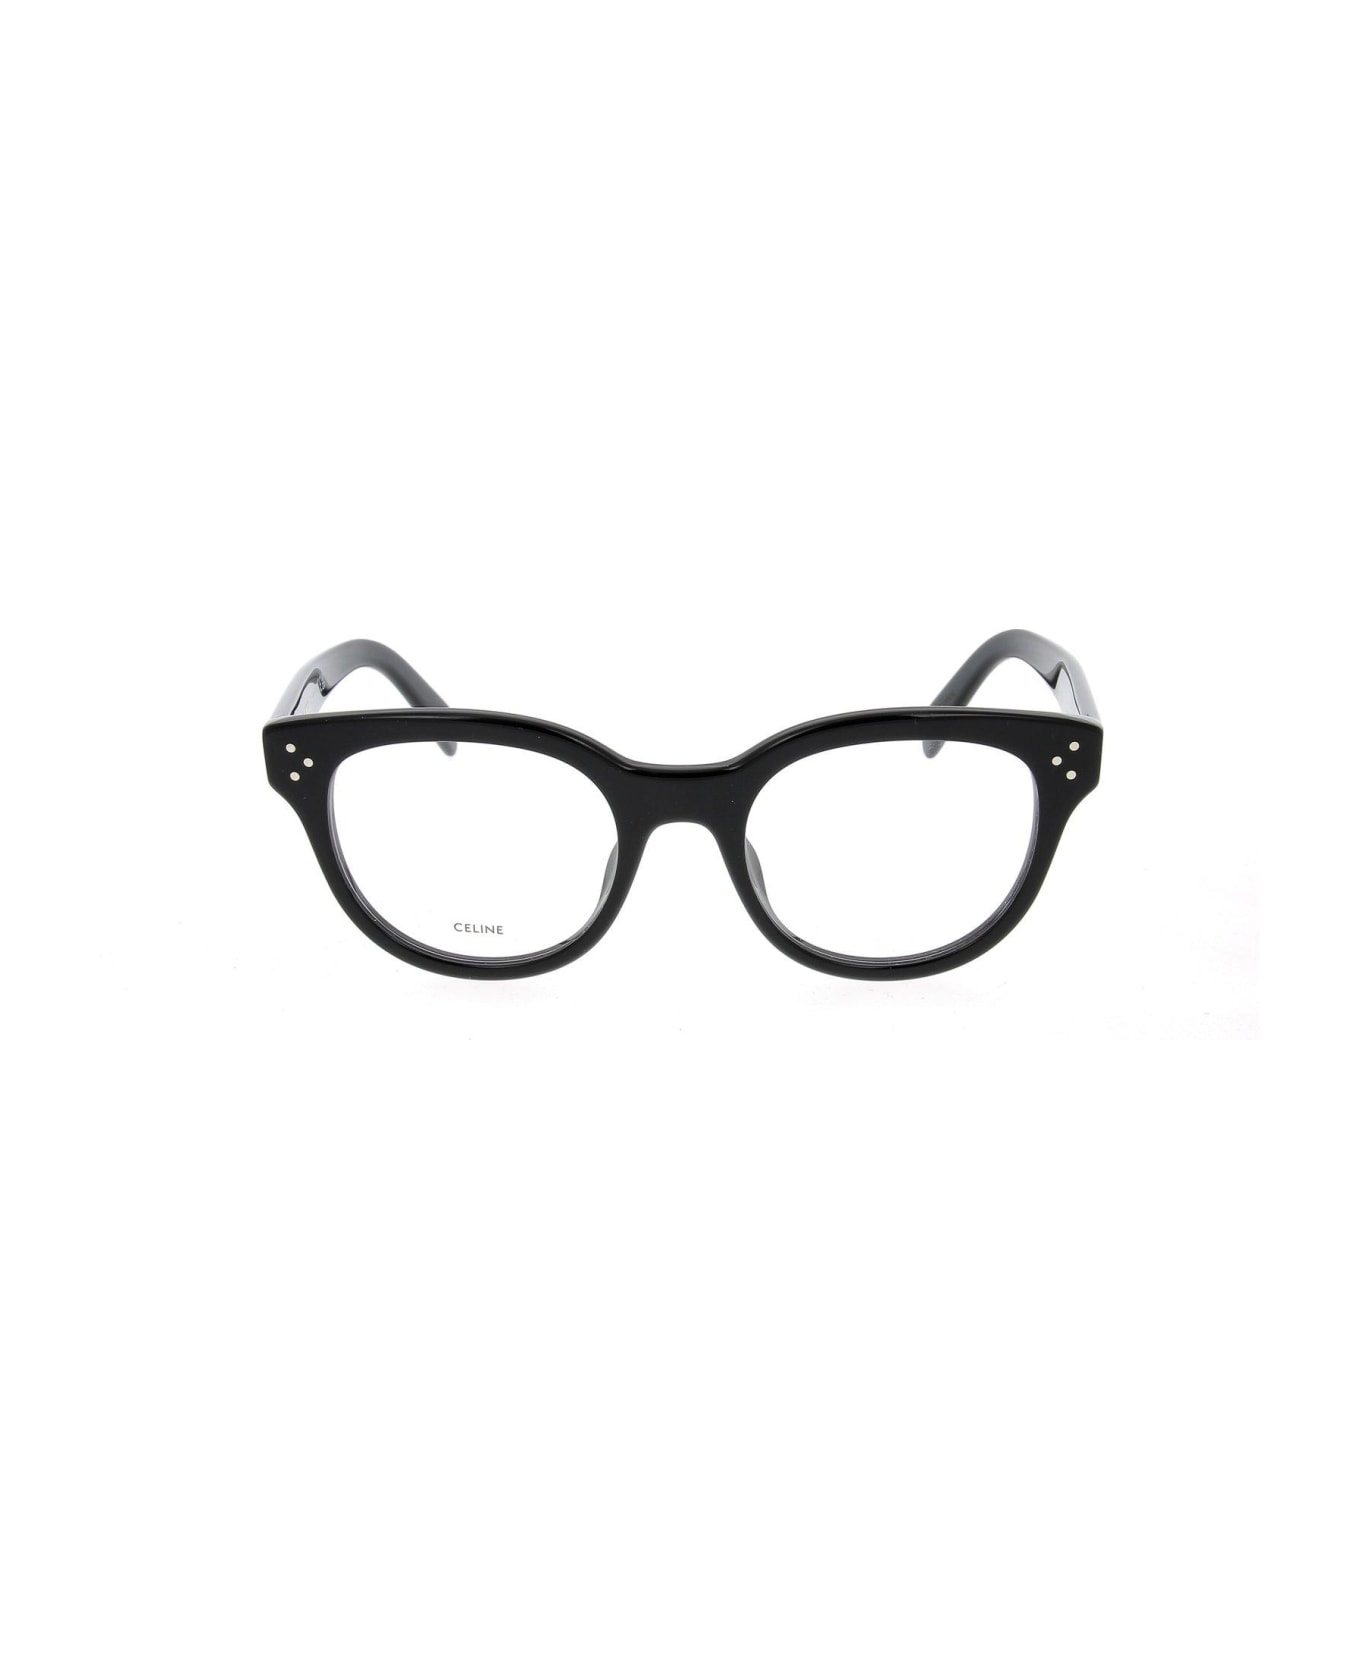 Celine Round Frame Glasses - 001